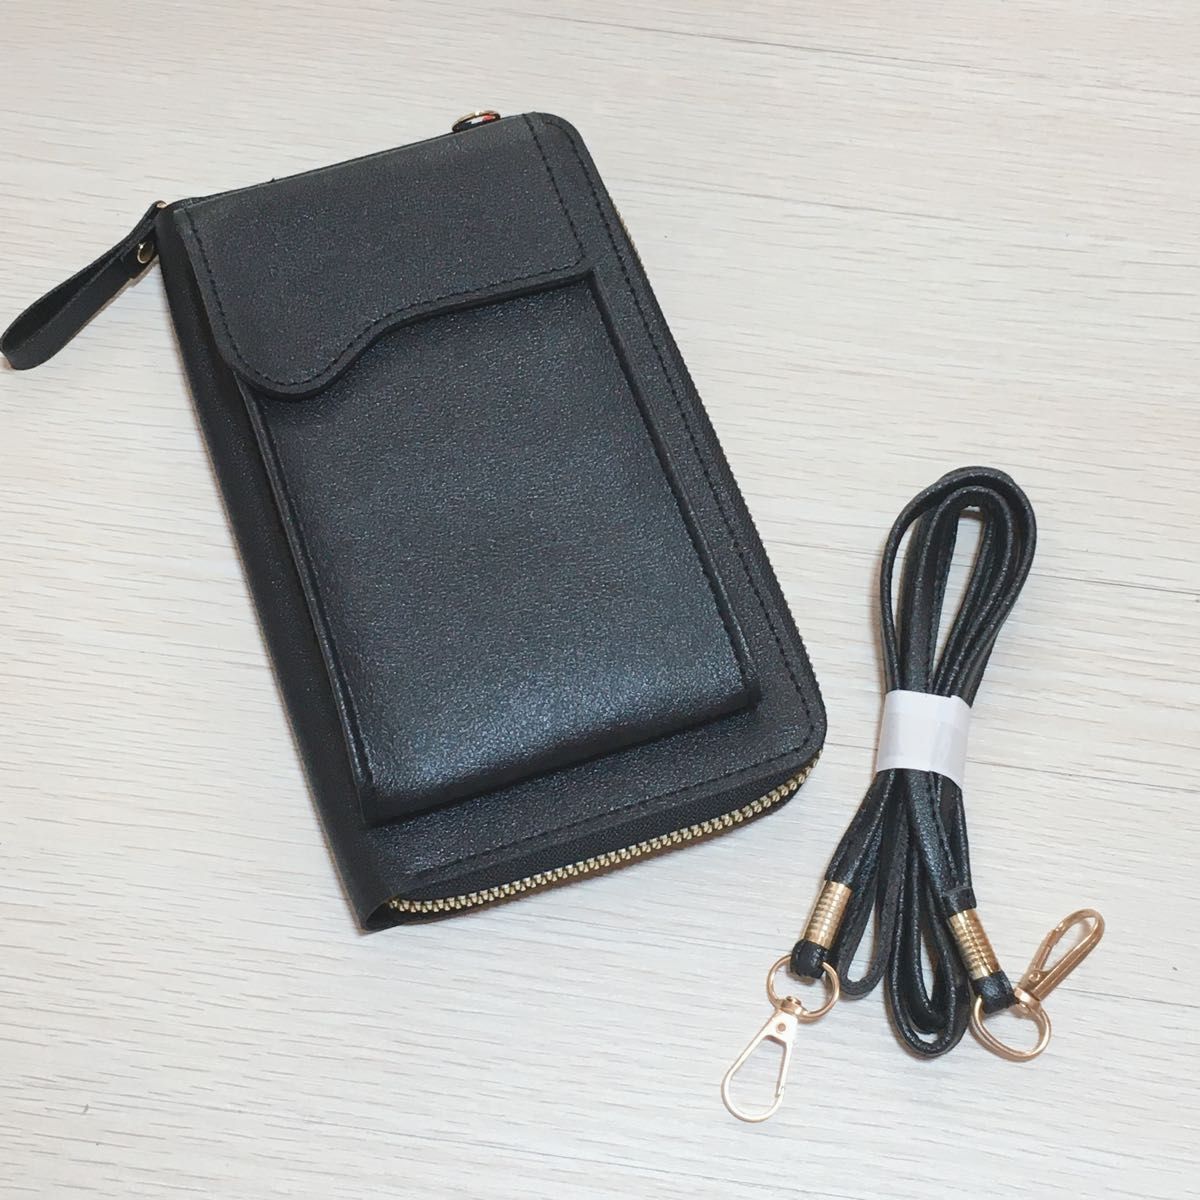 【大人気】黒 ブラック スマホショルダーバッグ スマホポーチ 肩掛け 財布 小物入れ 韓国 携帯ケース  お財布